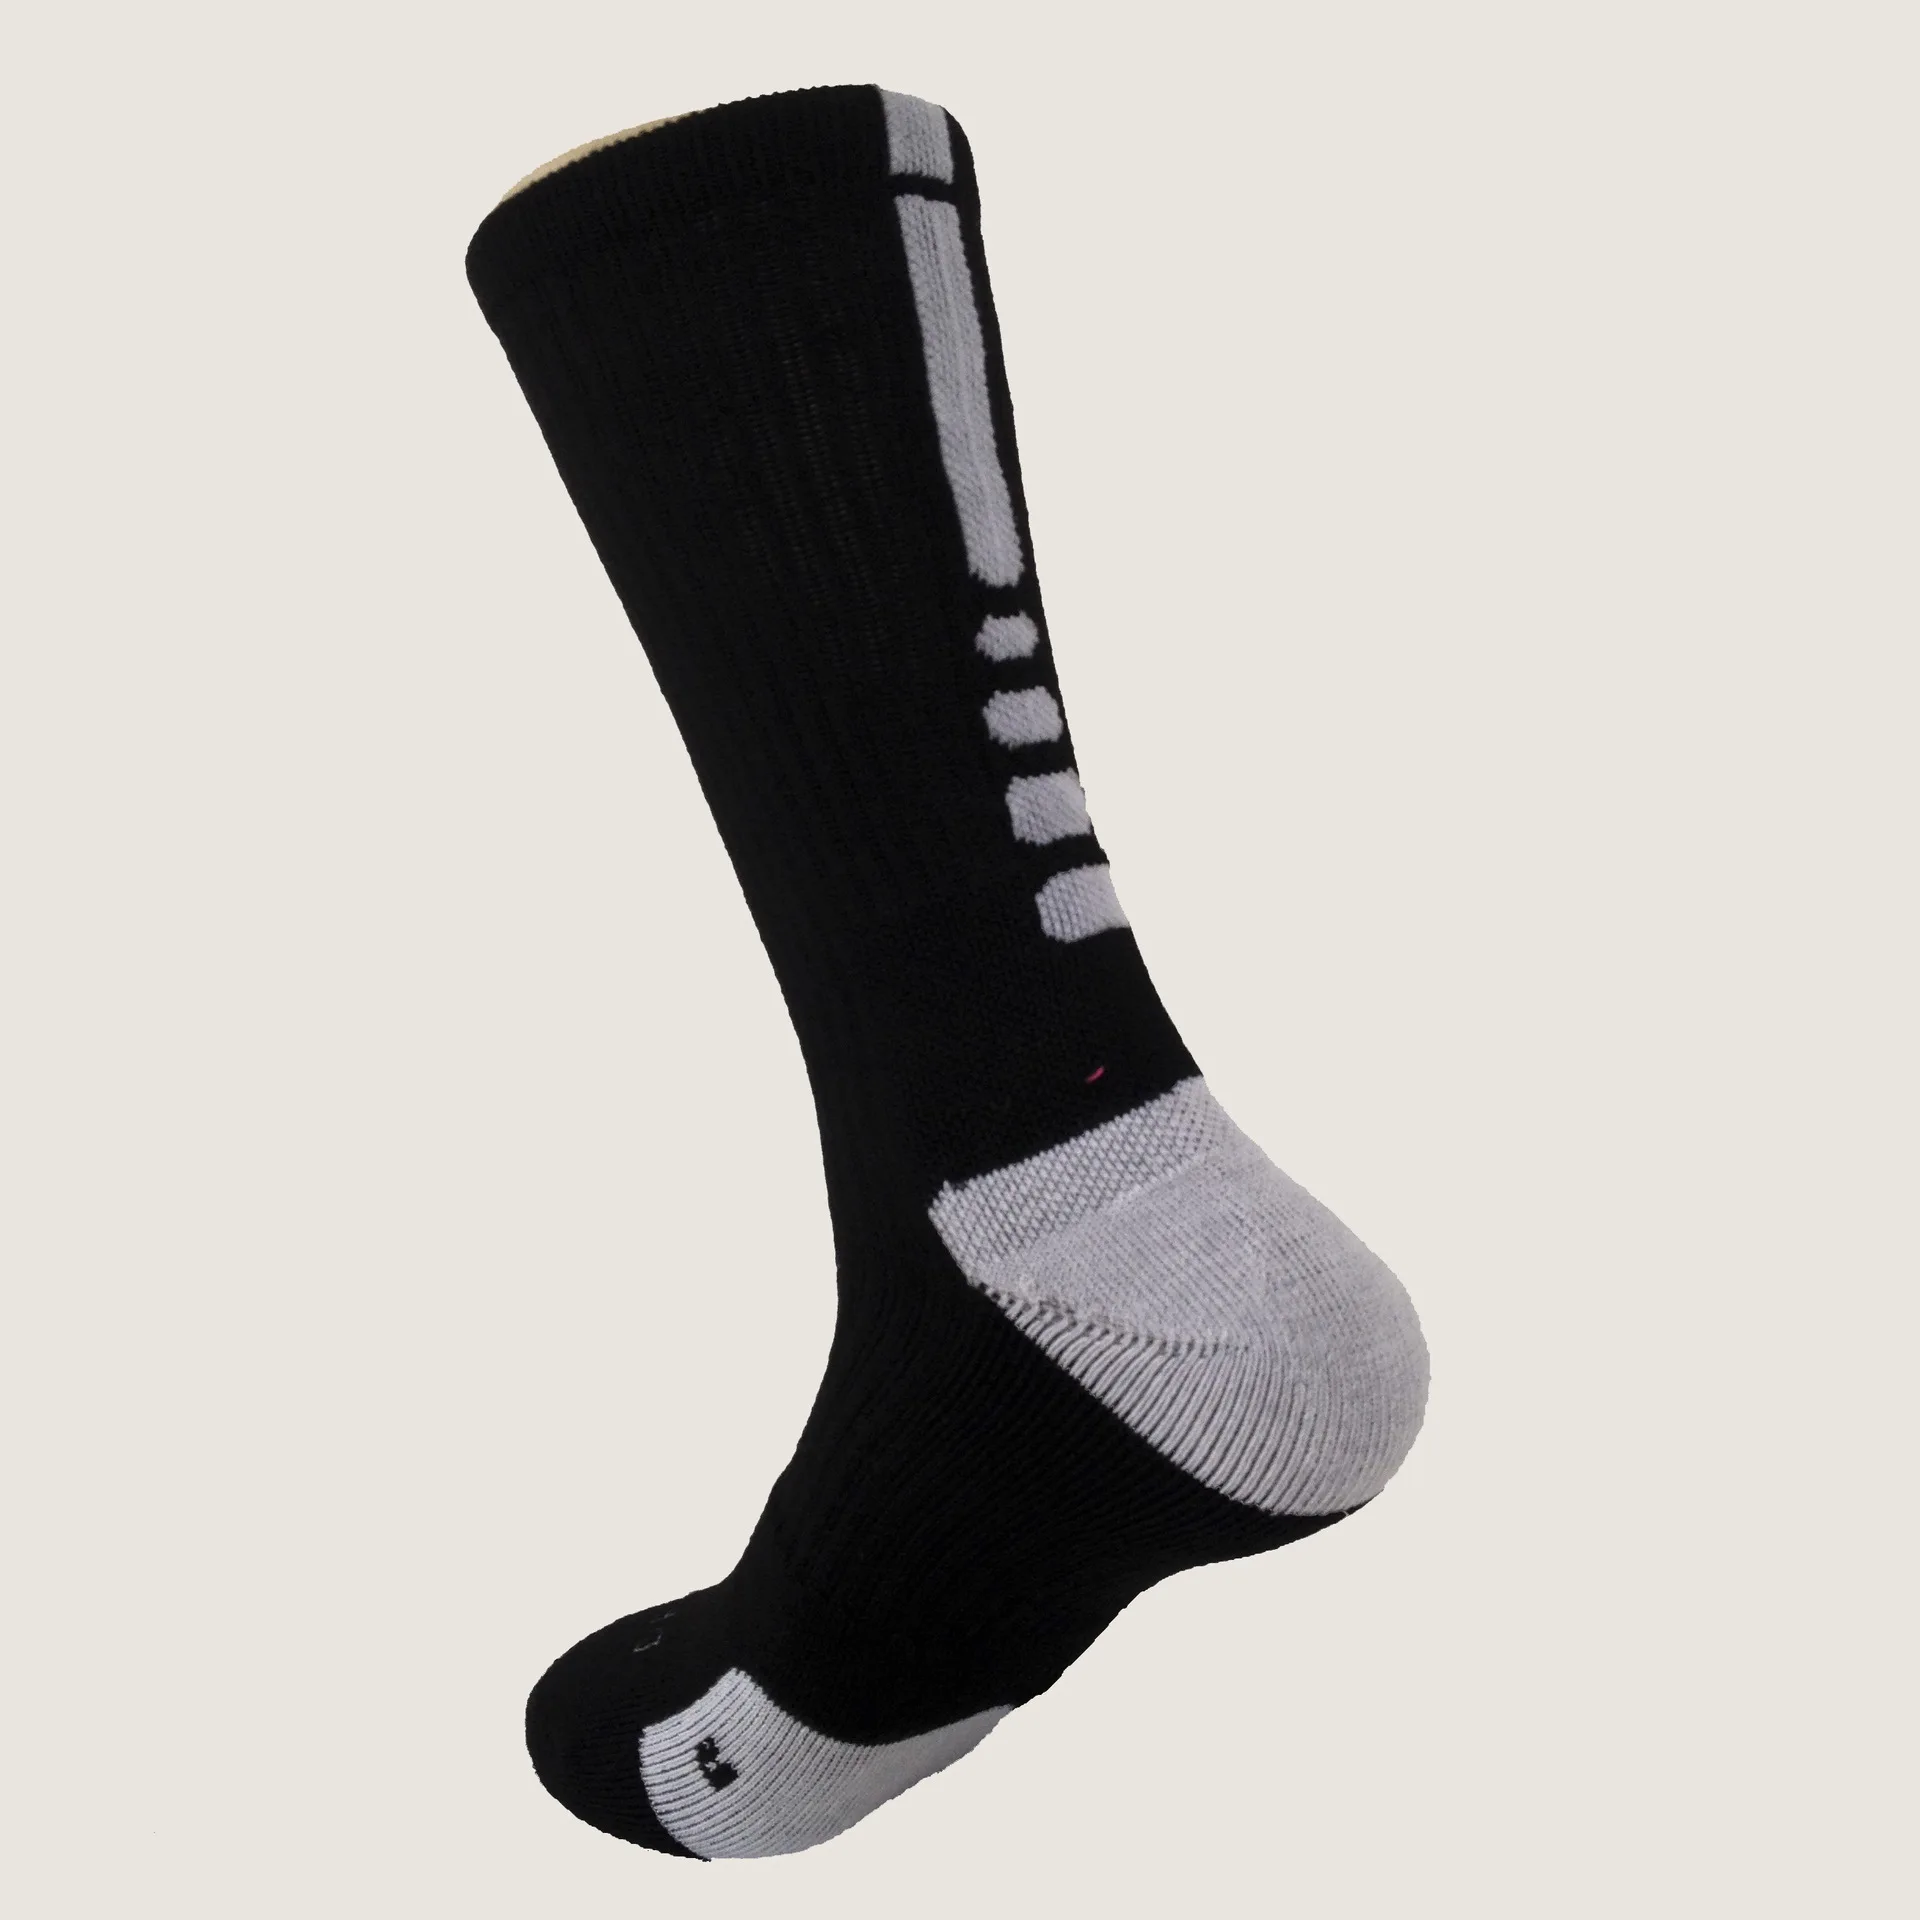 men’s long socks sport socks men sport socks for men mens running socks men running socks sports socks men socks for men cotton walking socks mens